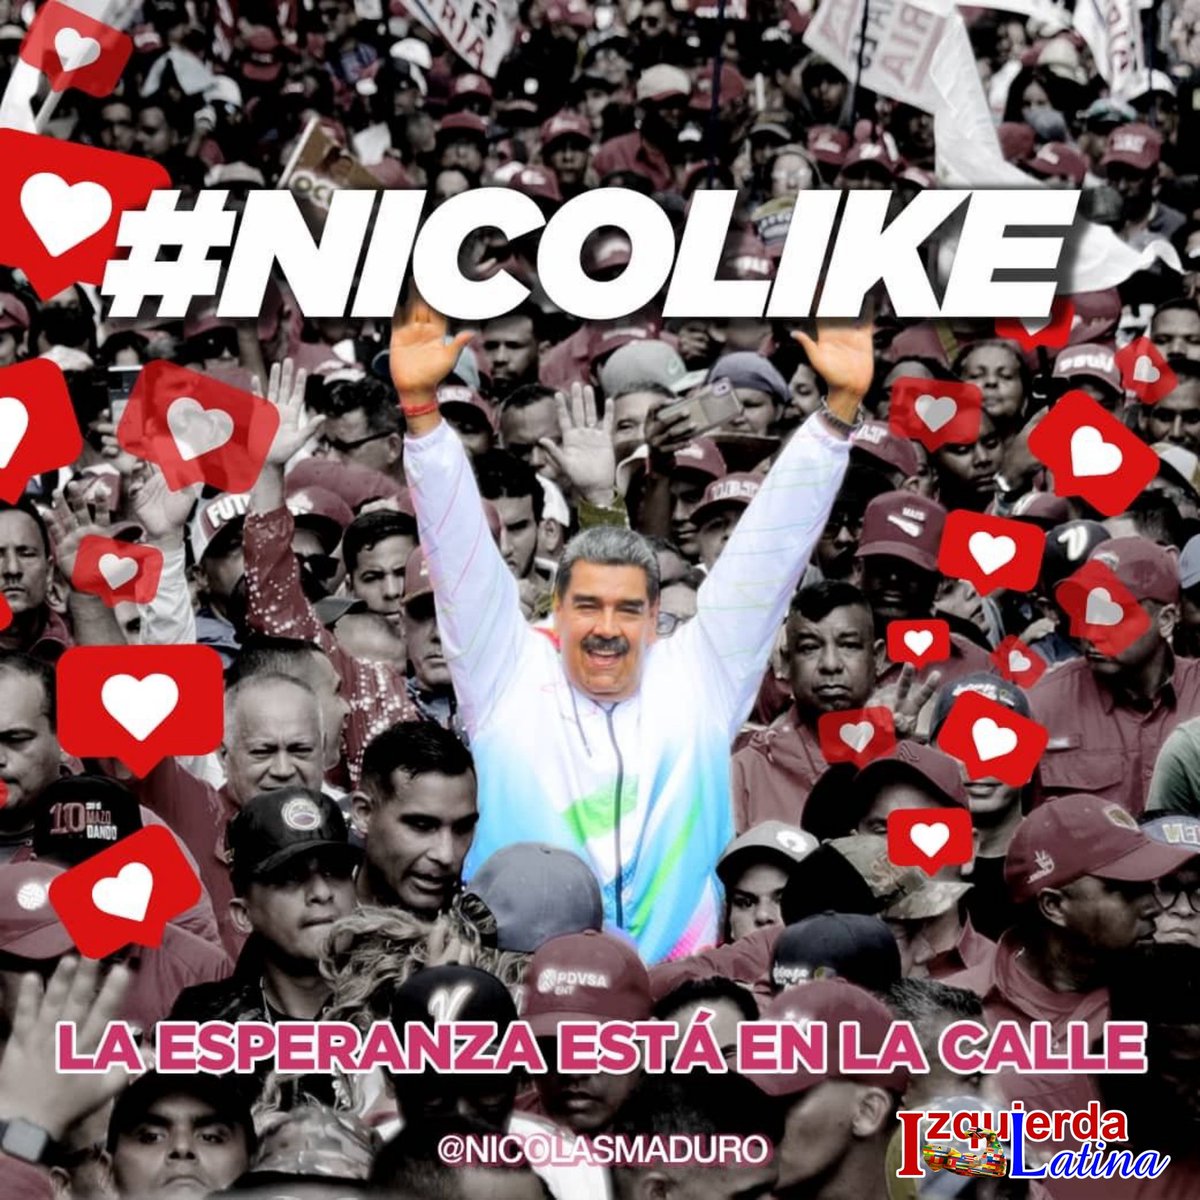 La esperanza esta en la calle, el presidente @NicolasMaduro es el presidente del pueblo. El pueblo de #VenezuelaVenceSiempre #NicoLike